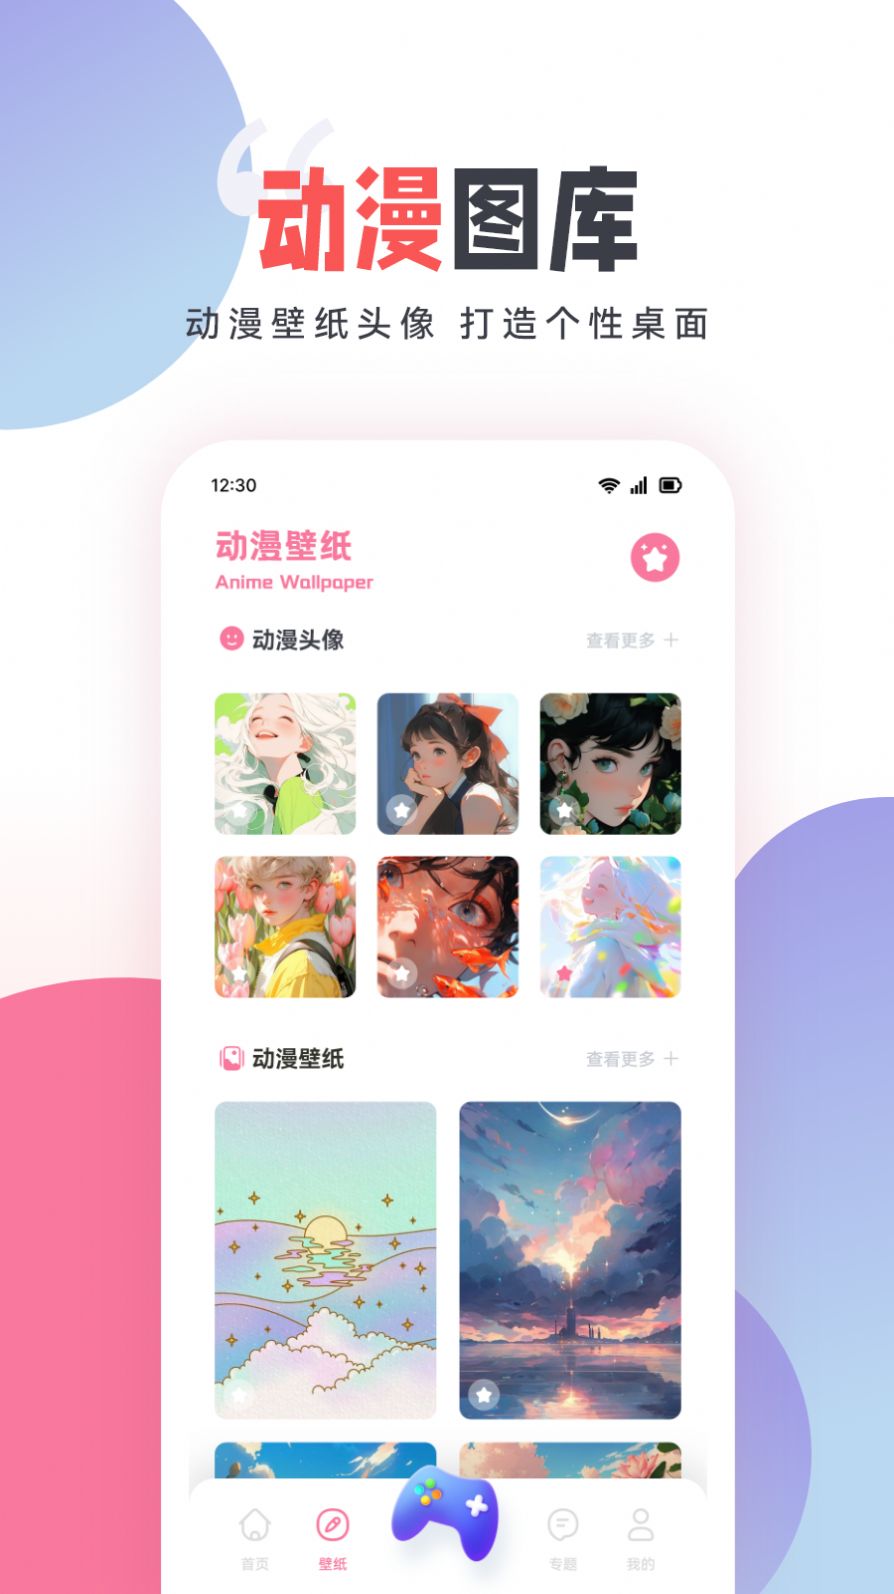 嘀嘀动漫盒子手机版app官方正版下载图片5